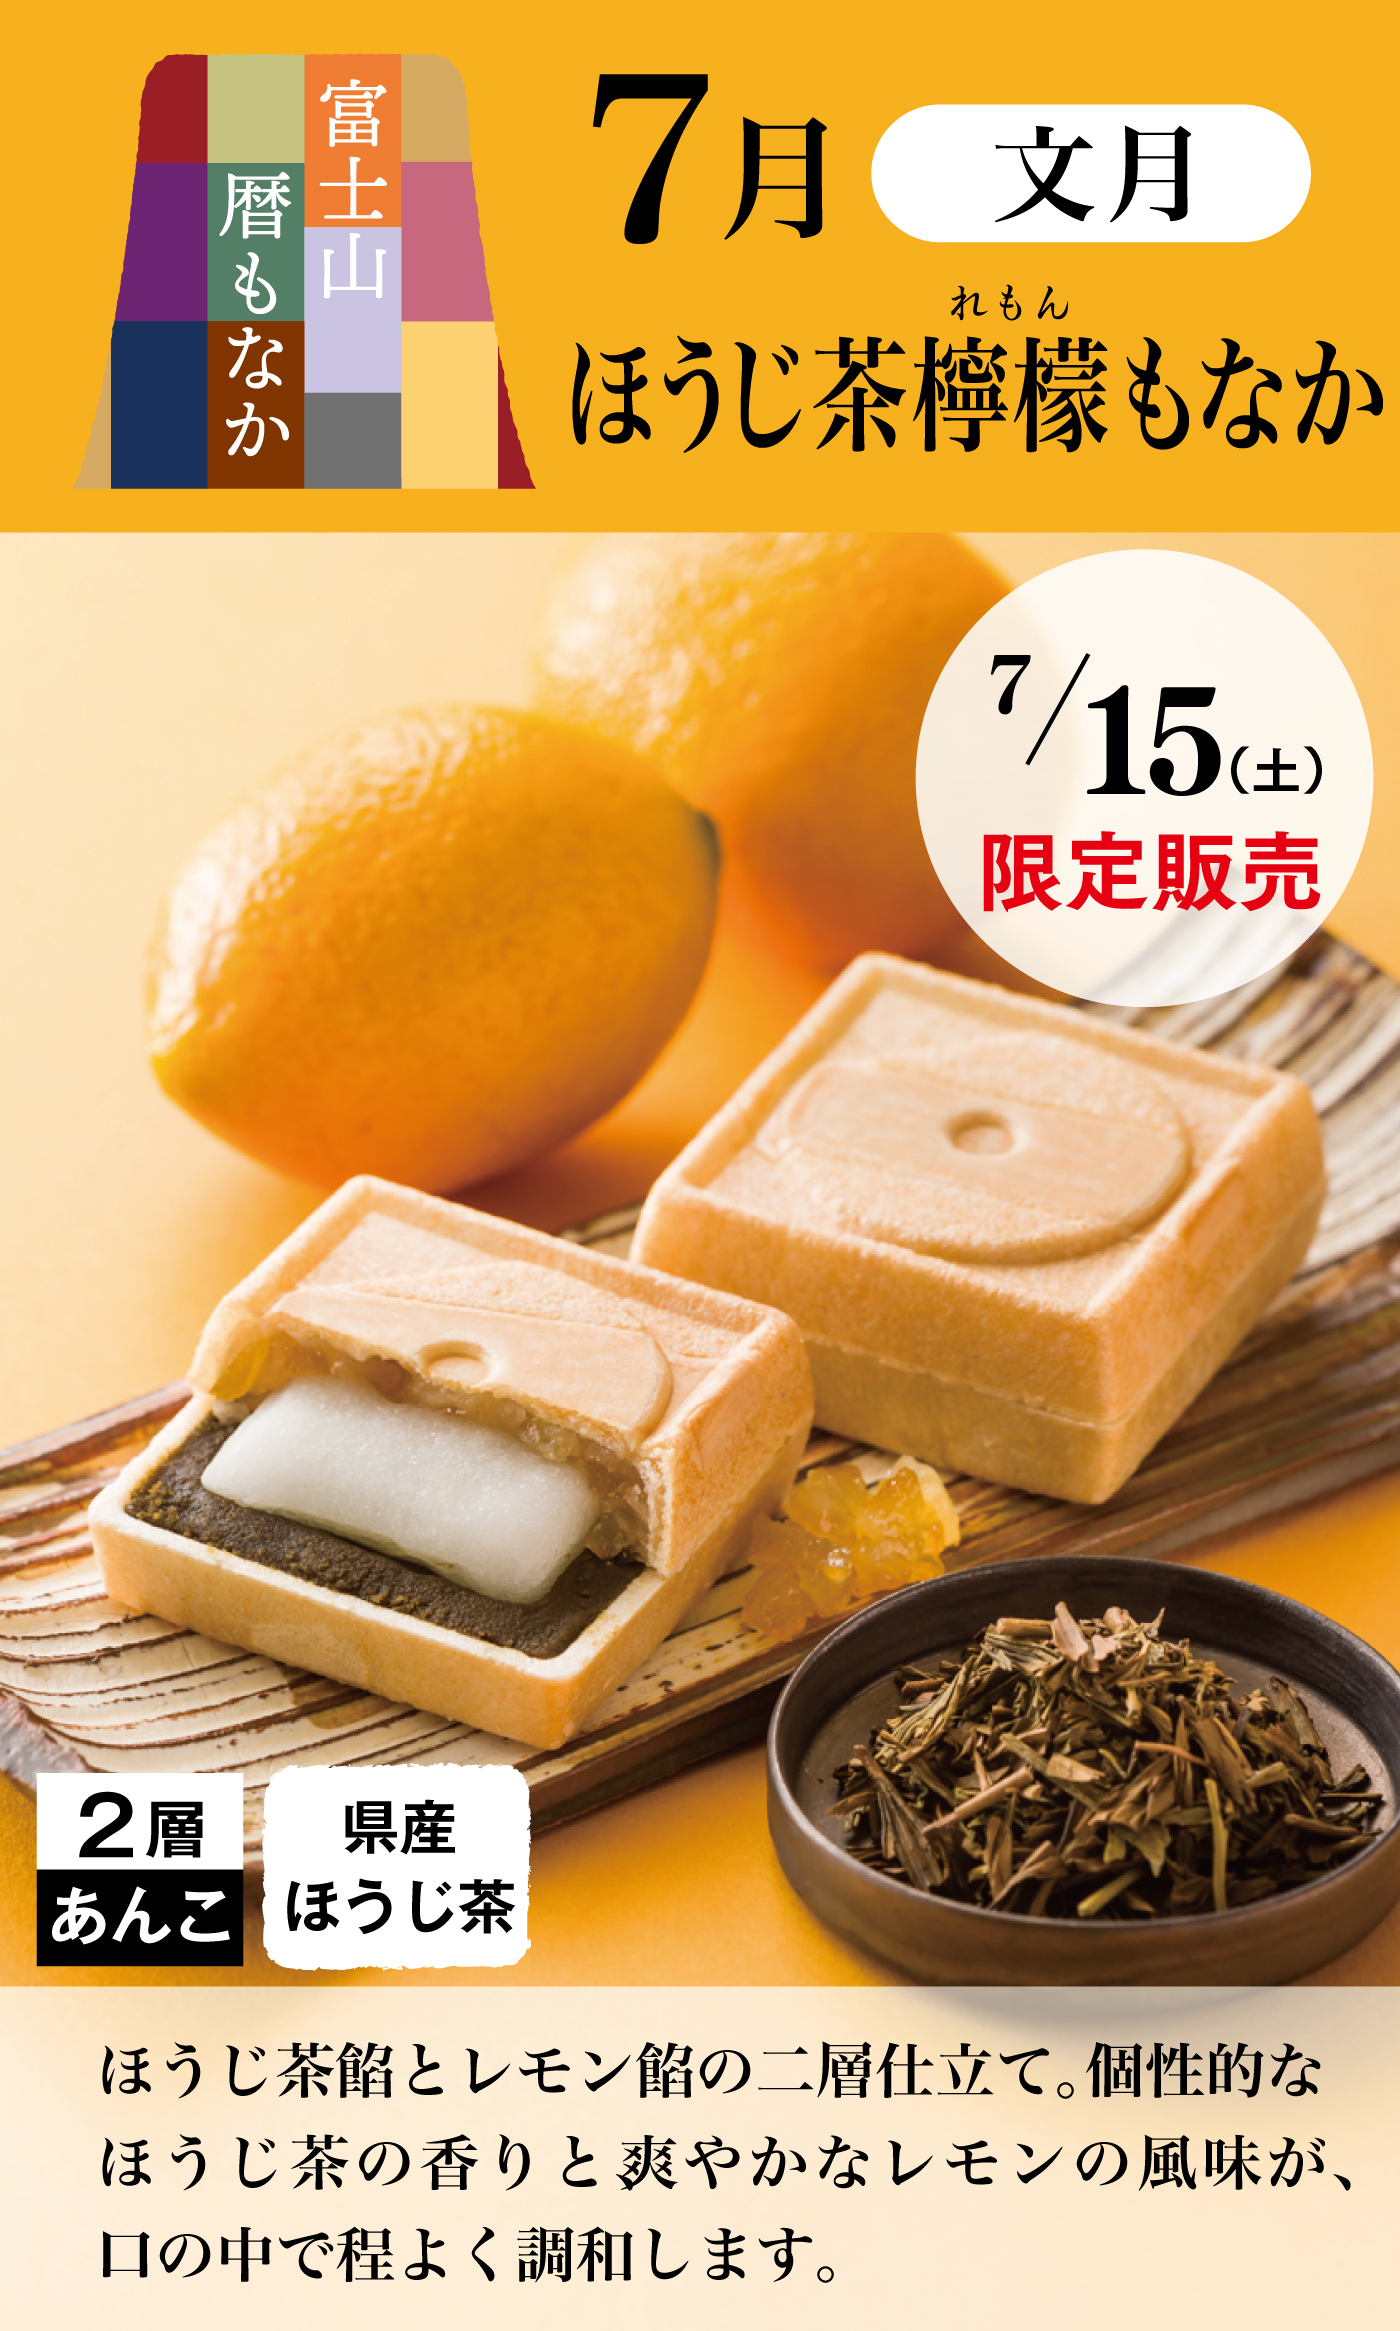 富士山暦もなか7月文月ほうじ茶檸檬もなか7/15(土)限定販売2層あんこ県産ほうじ茶ほうじ茶餡とレモン餡の二層仕立て。個性的なほうじ茶の香りと、爽やかなレモンの風味が、口の中で程よく調和します。